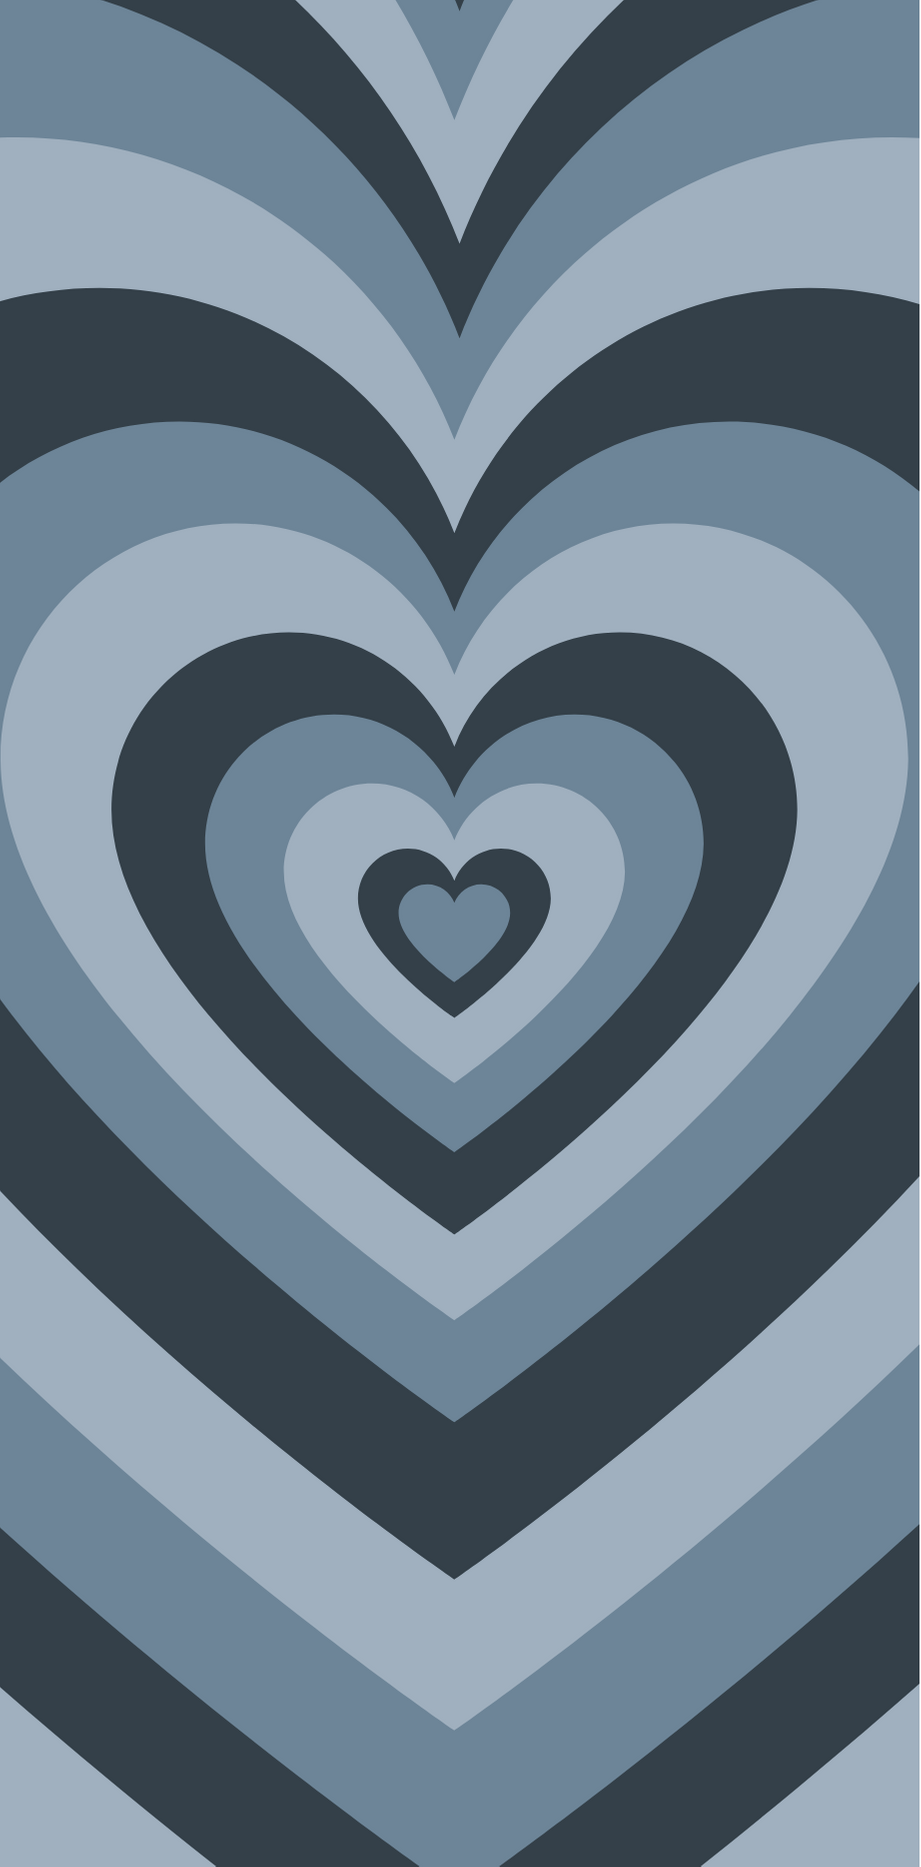 high quality blue heart wallpaper. Heart iphone wallpaper, Hippie wallpaper, Heart wallpaper